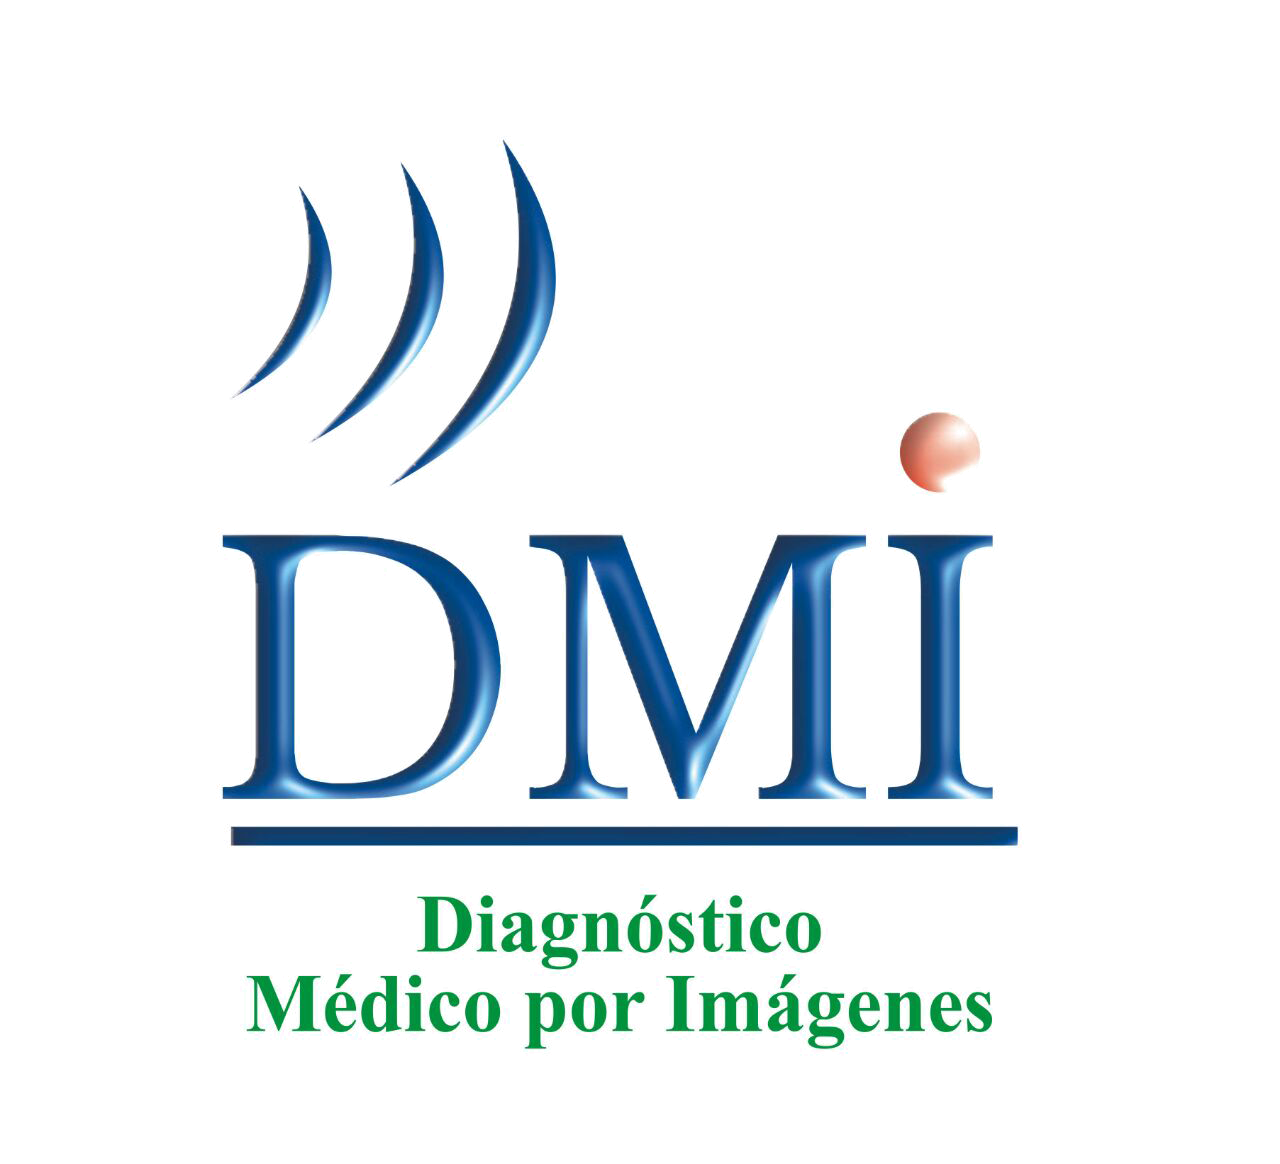 DMI - Diagnóstico Médico por Imágenes